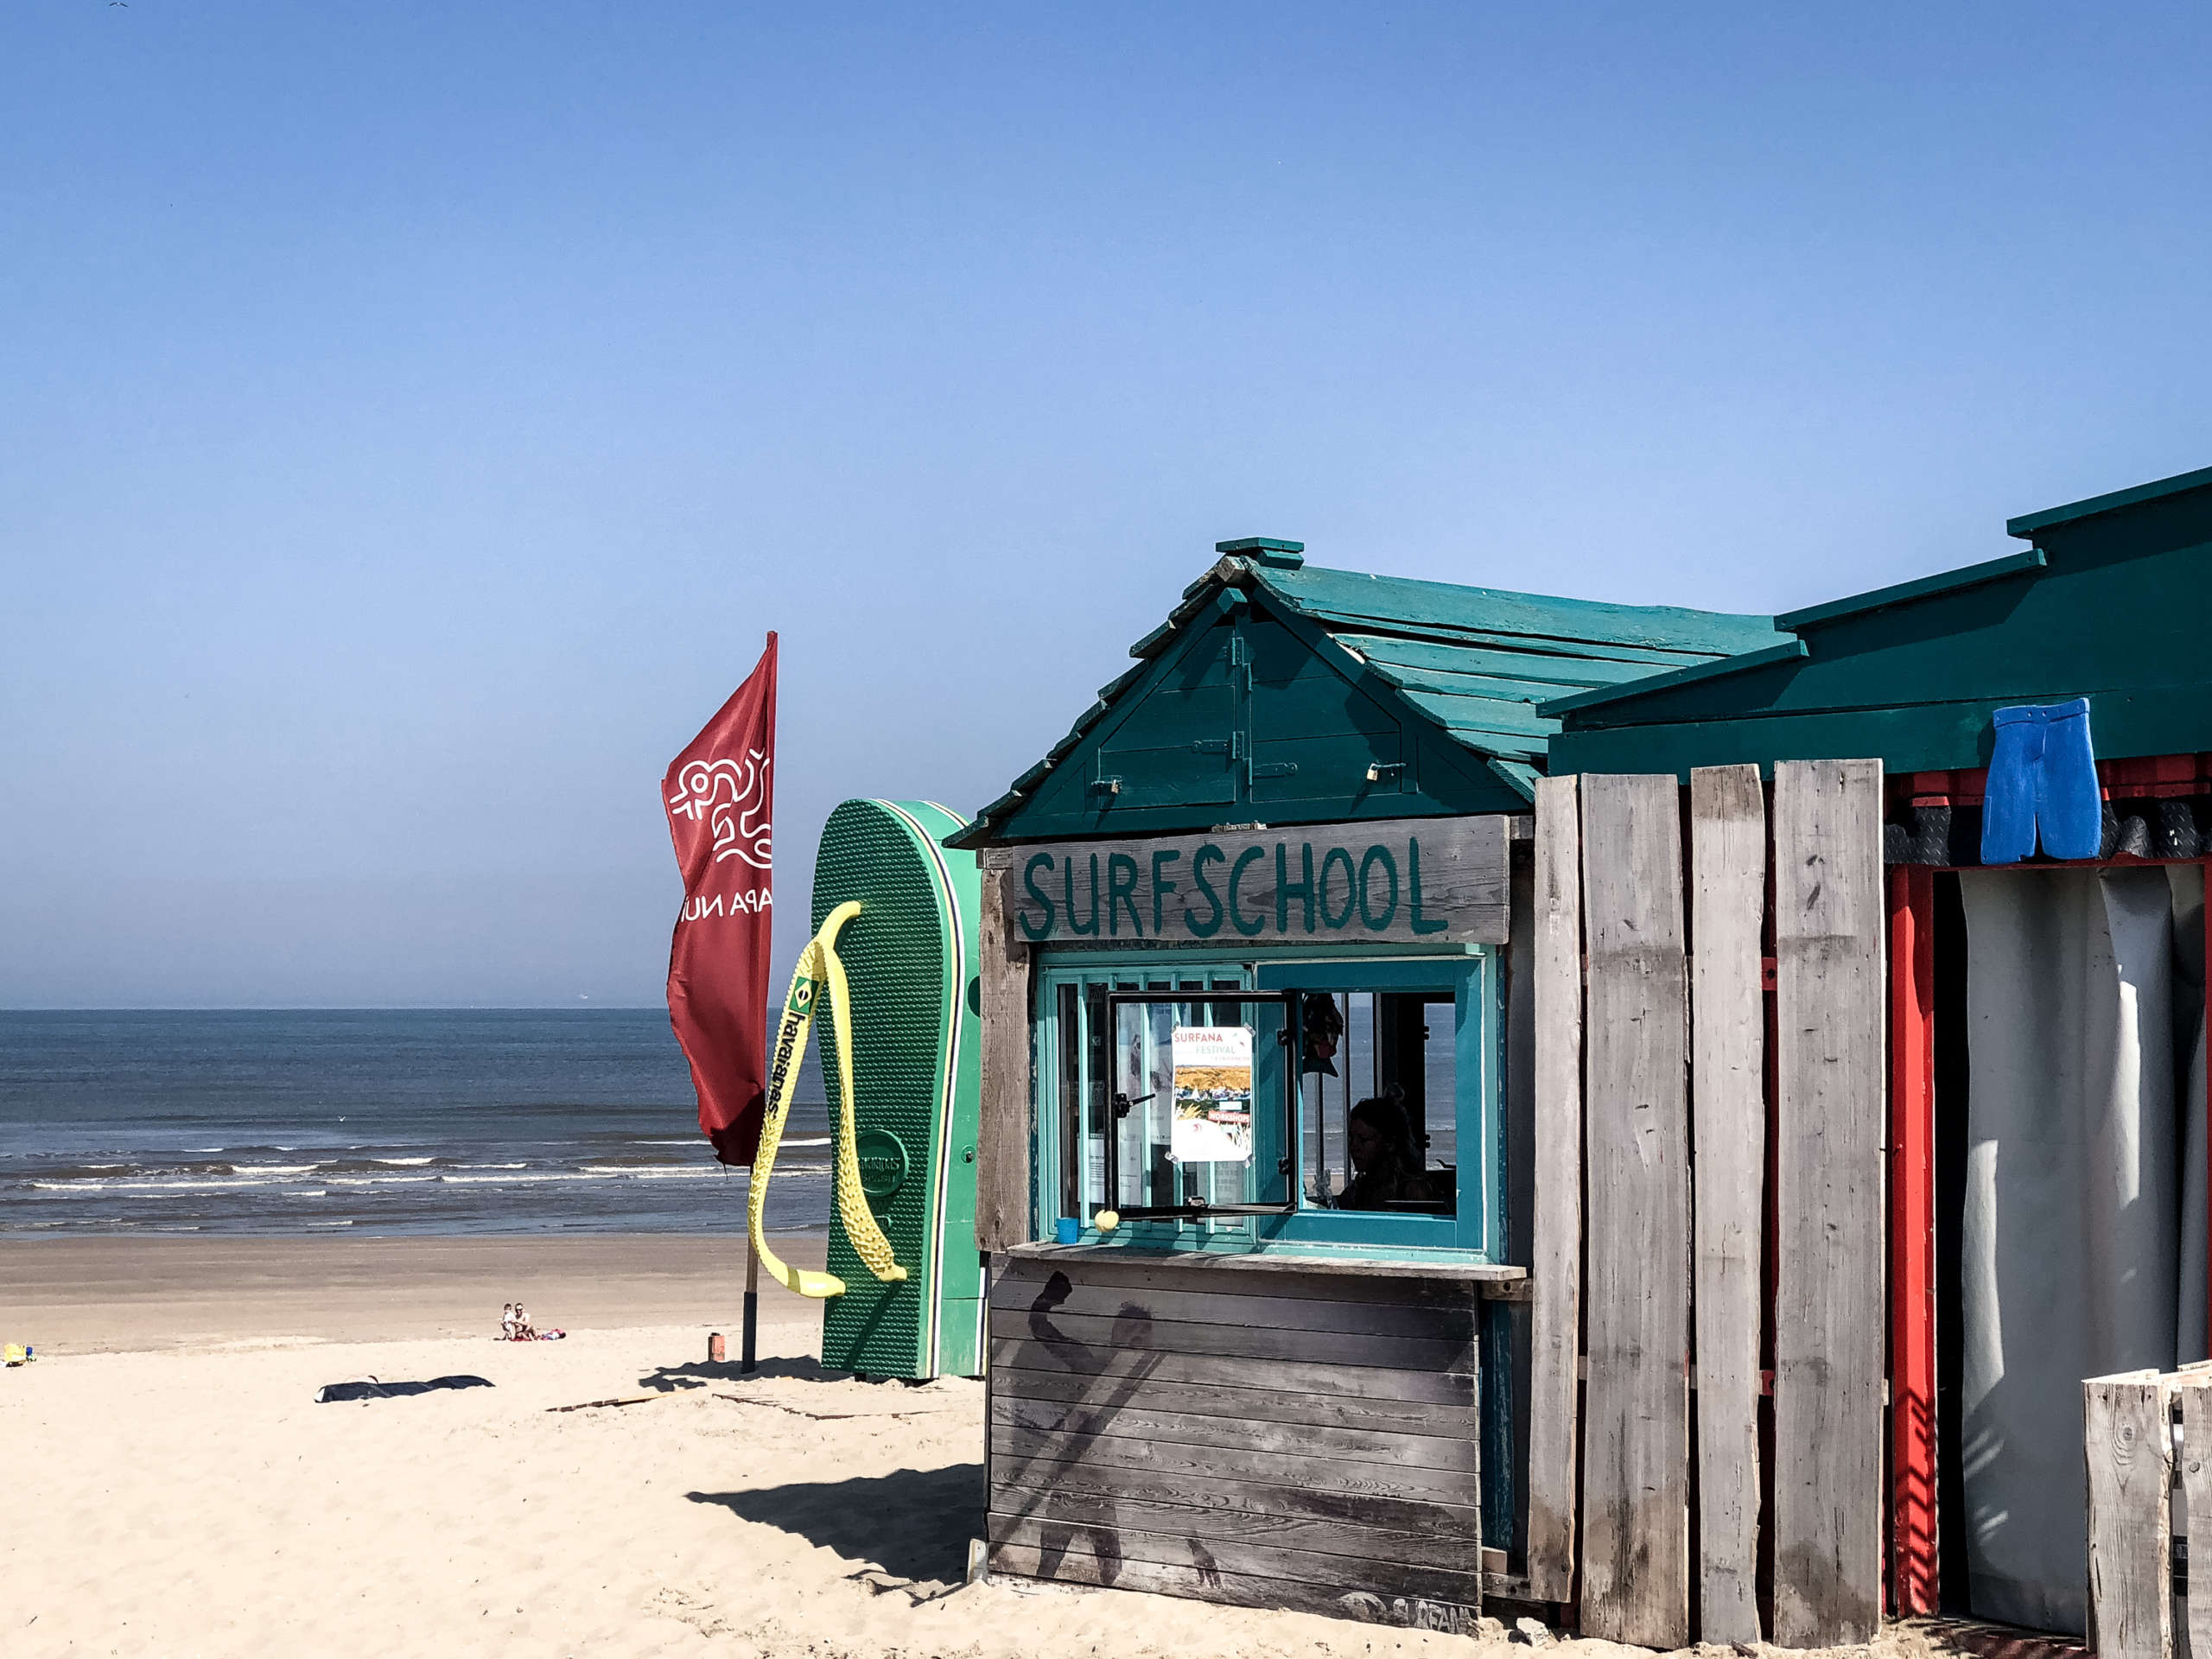 Surfschool Holzhütte am Strand mit Blick aufs Meer in den Niederlanden